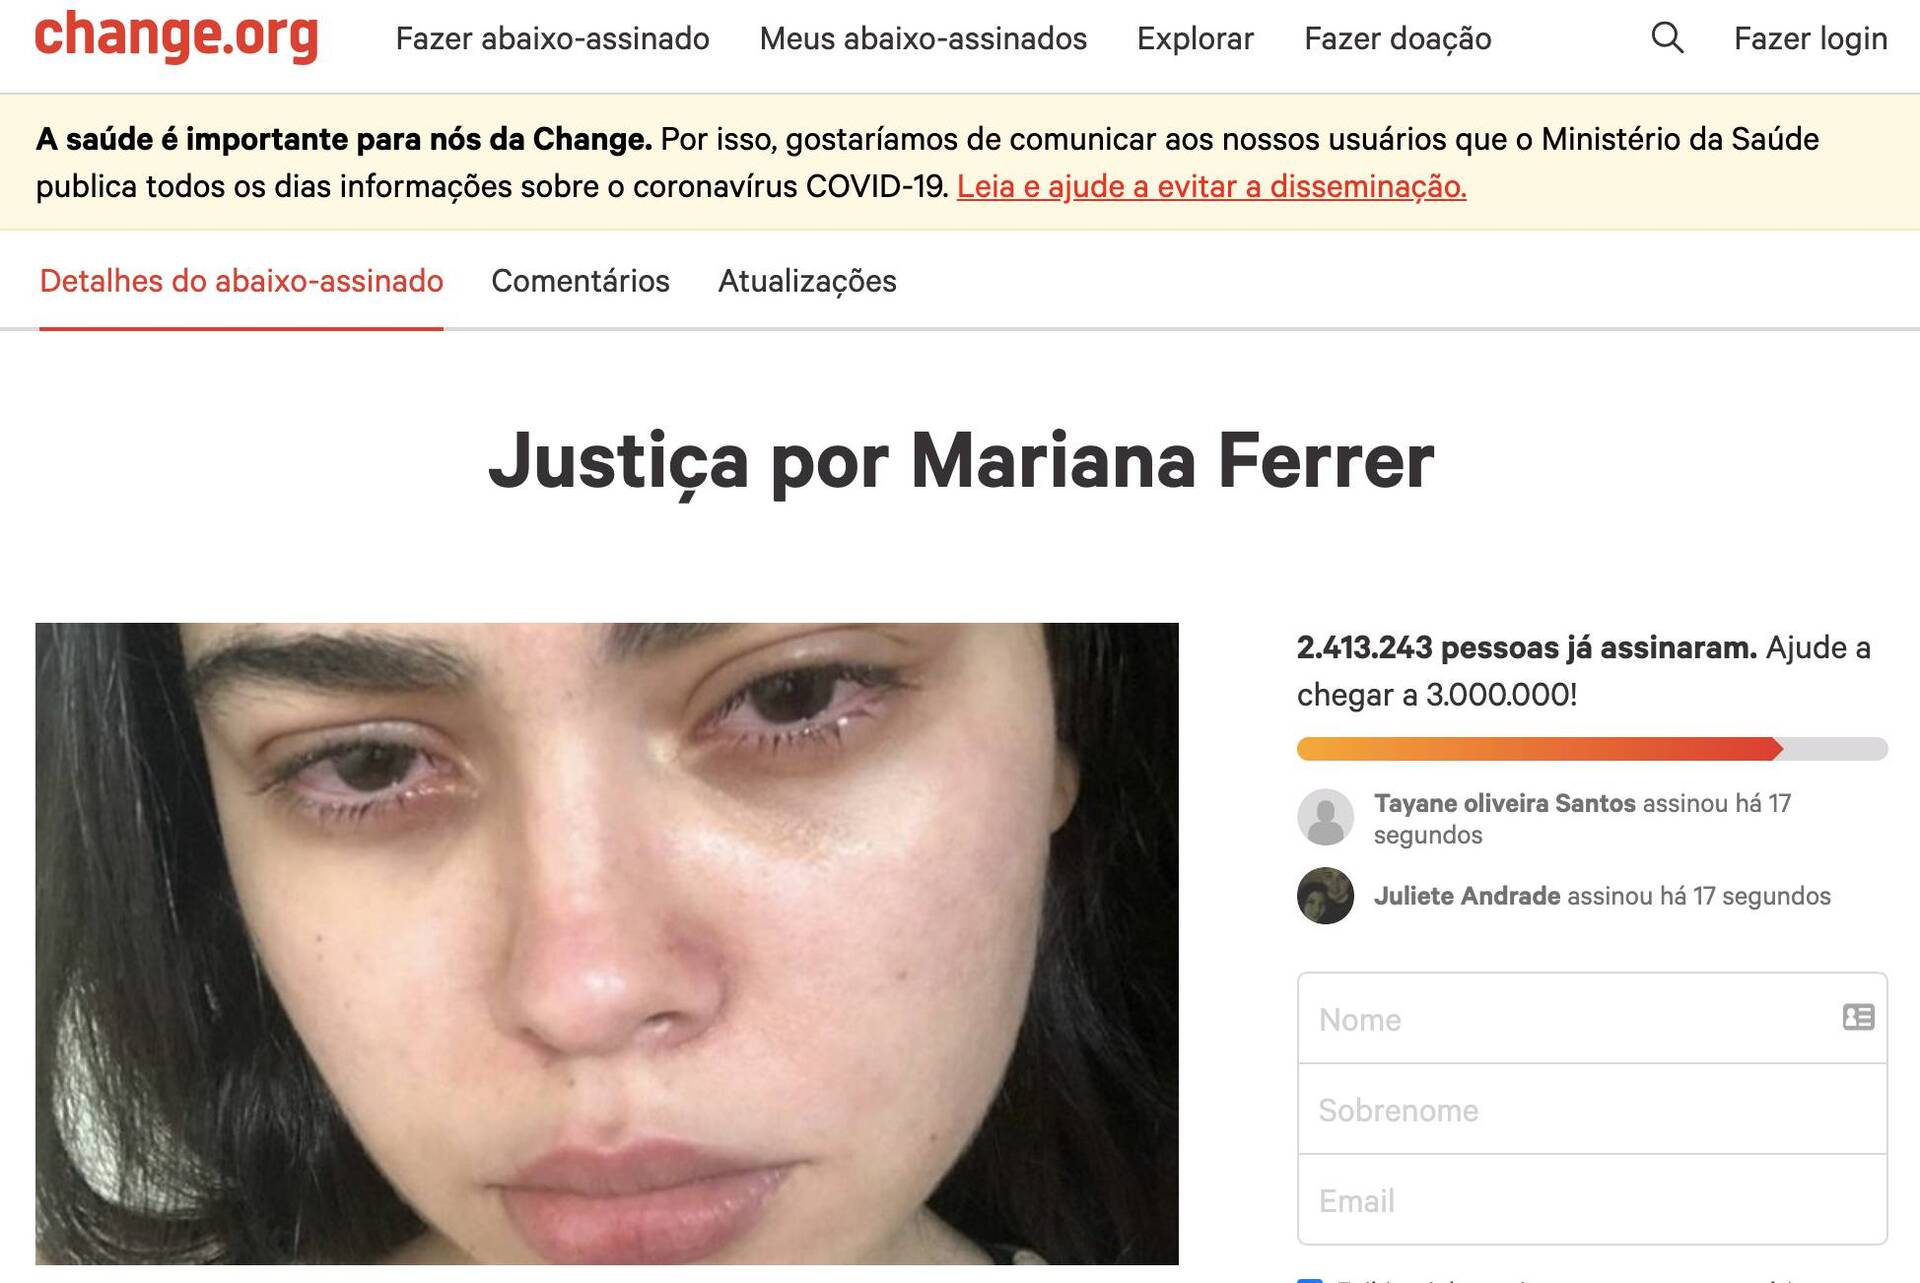 Petição por justiça a Mari Ferrer chega a 4,2 milhões de assinaturas